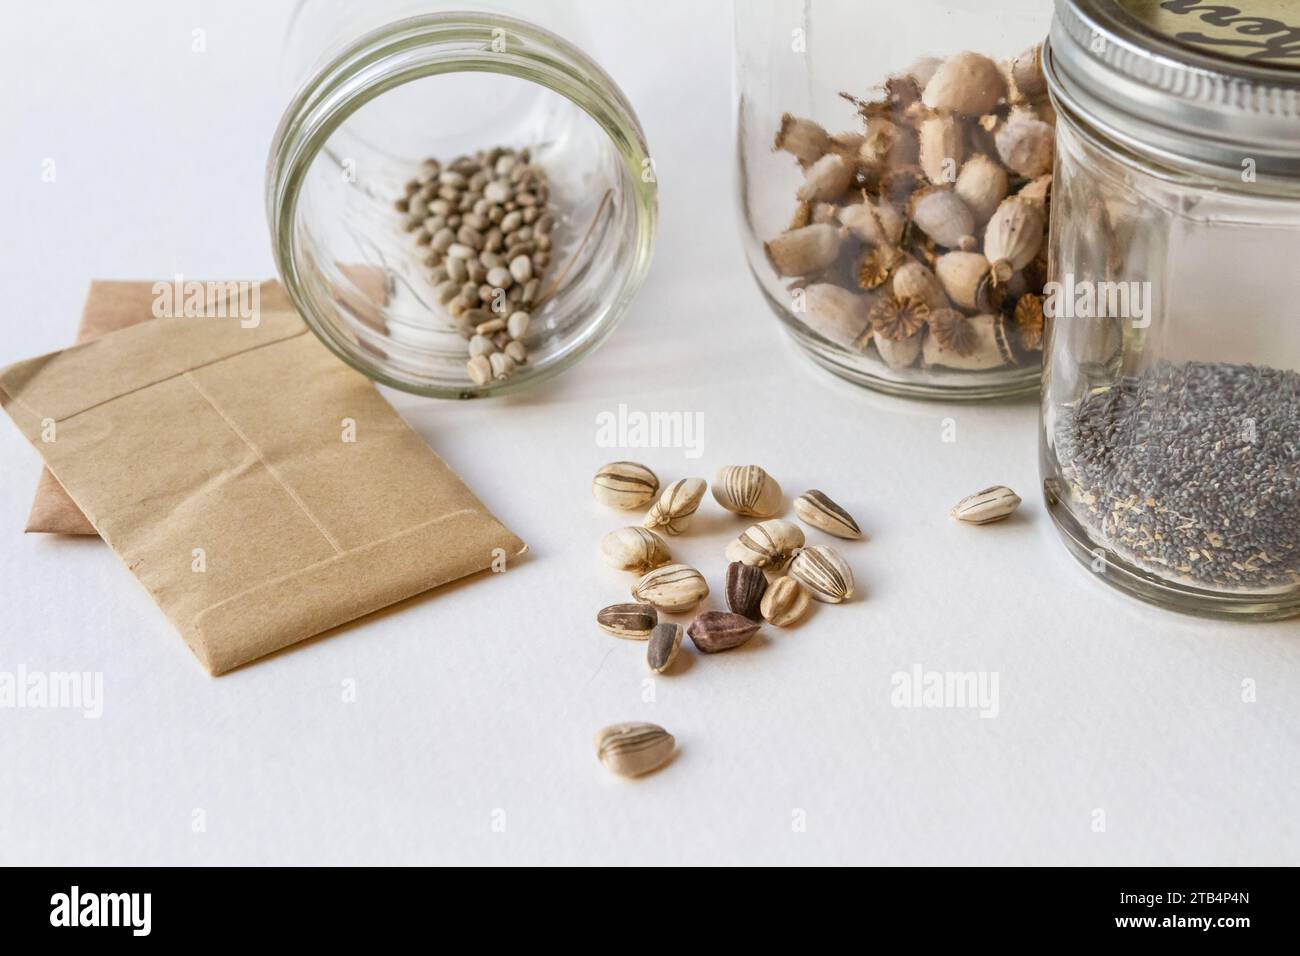 Samen aus Blumen und Gemüse sortiert und lagerfertig in Glasgläsern und Papierumschlägen – Teil eines sparsamen und nachhaltigen Lebensstils. Stockfoto